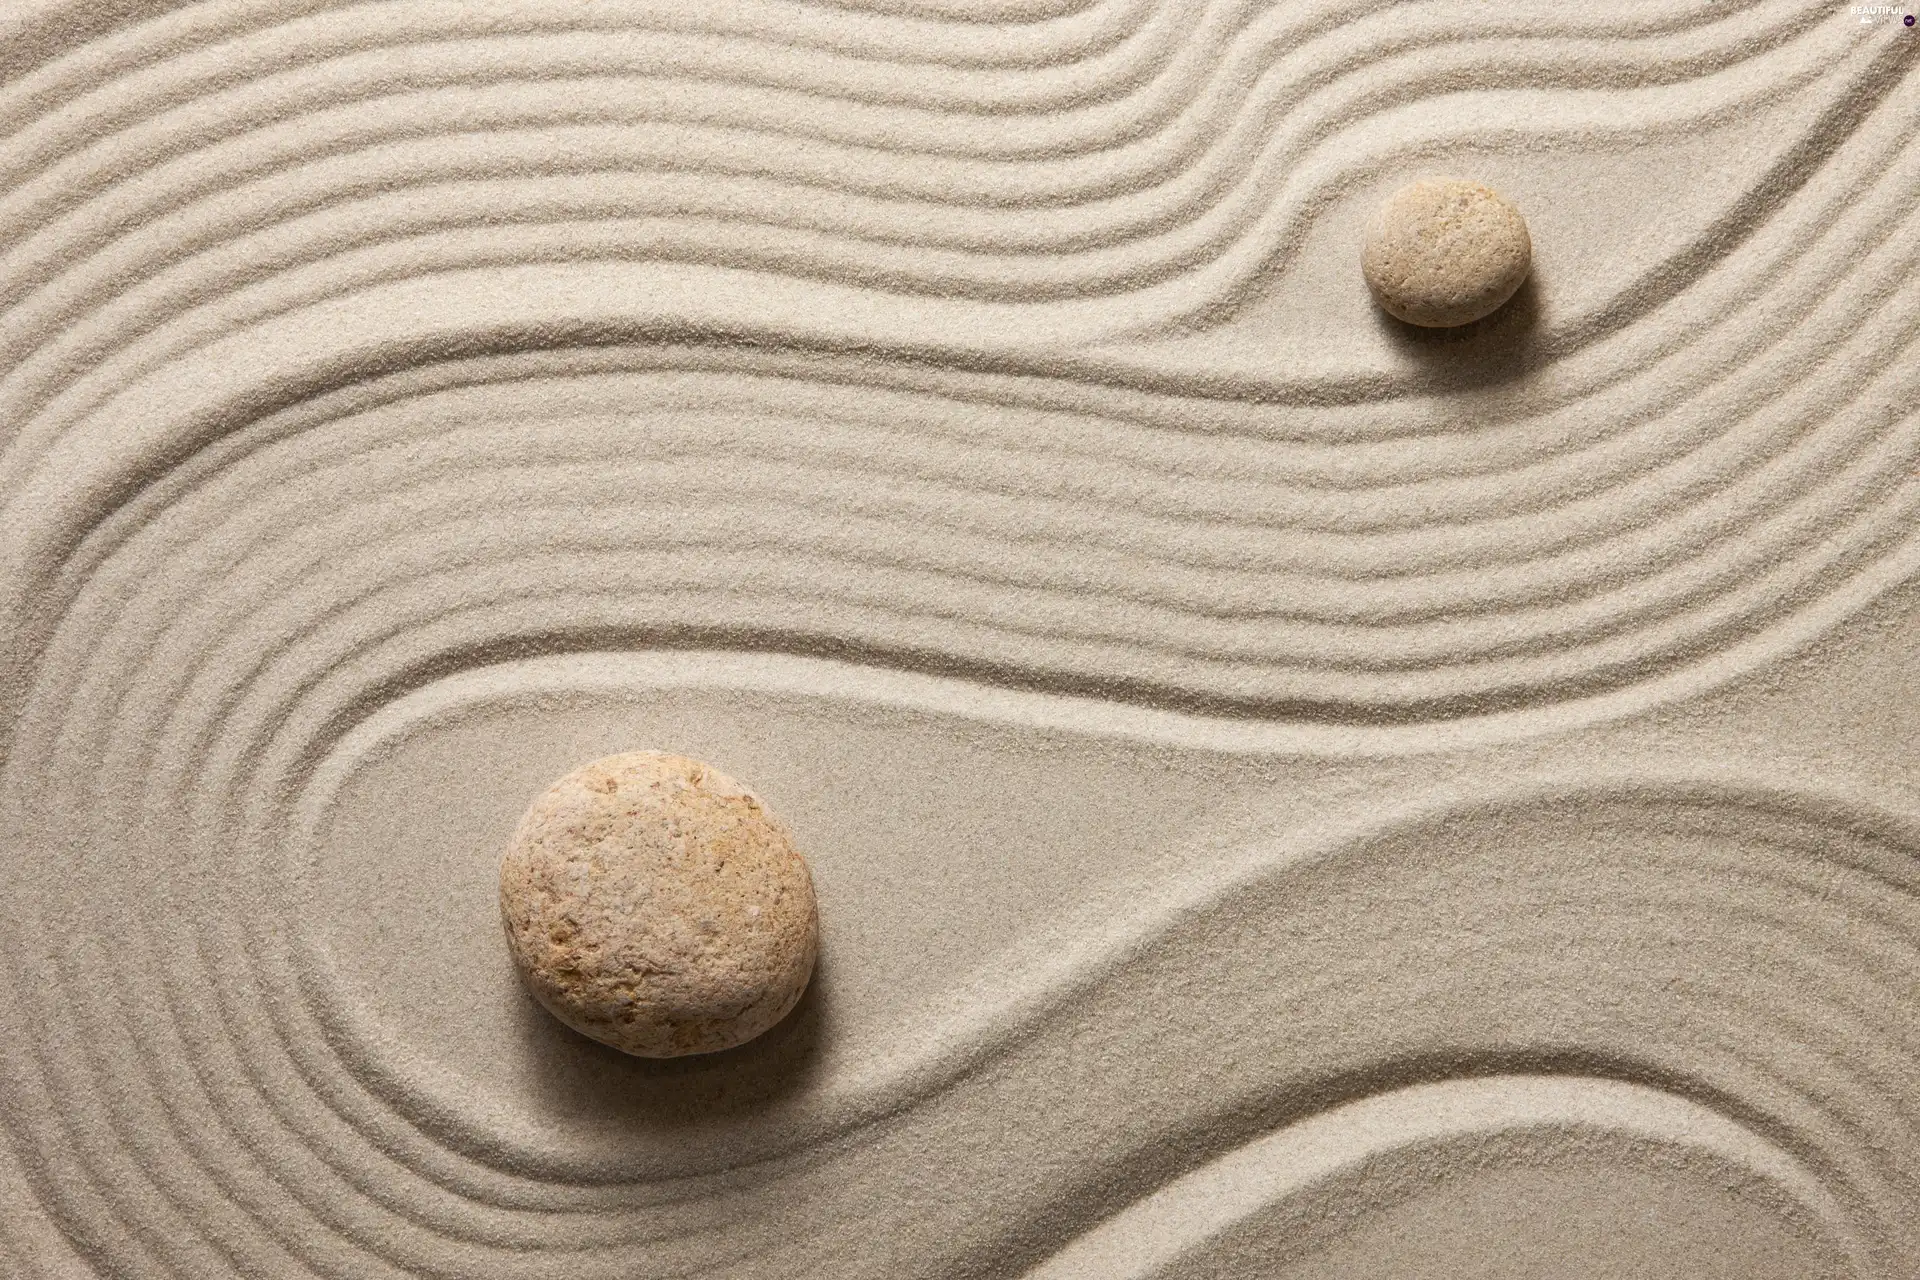 Sand, Stones